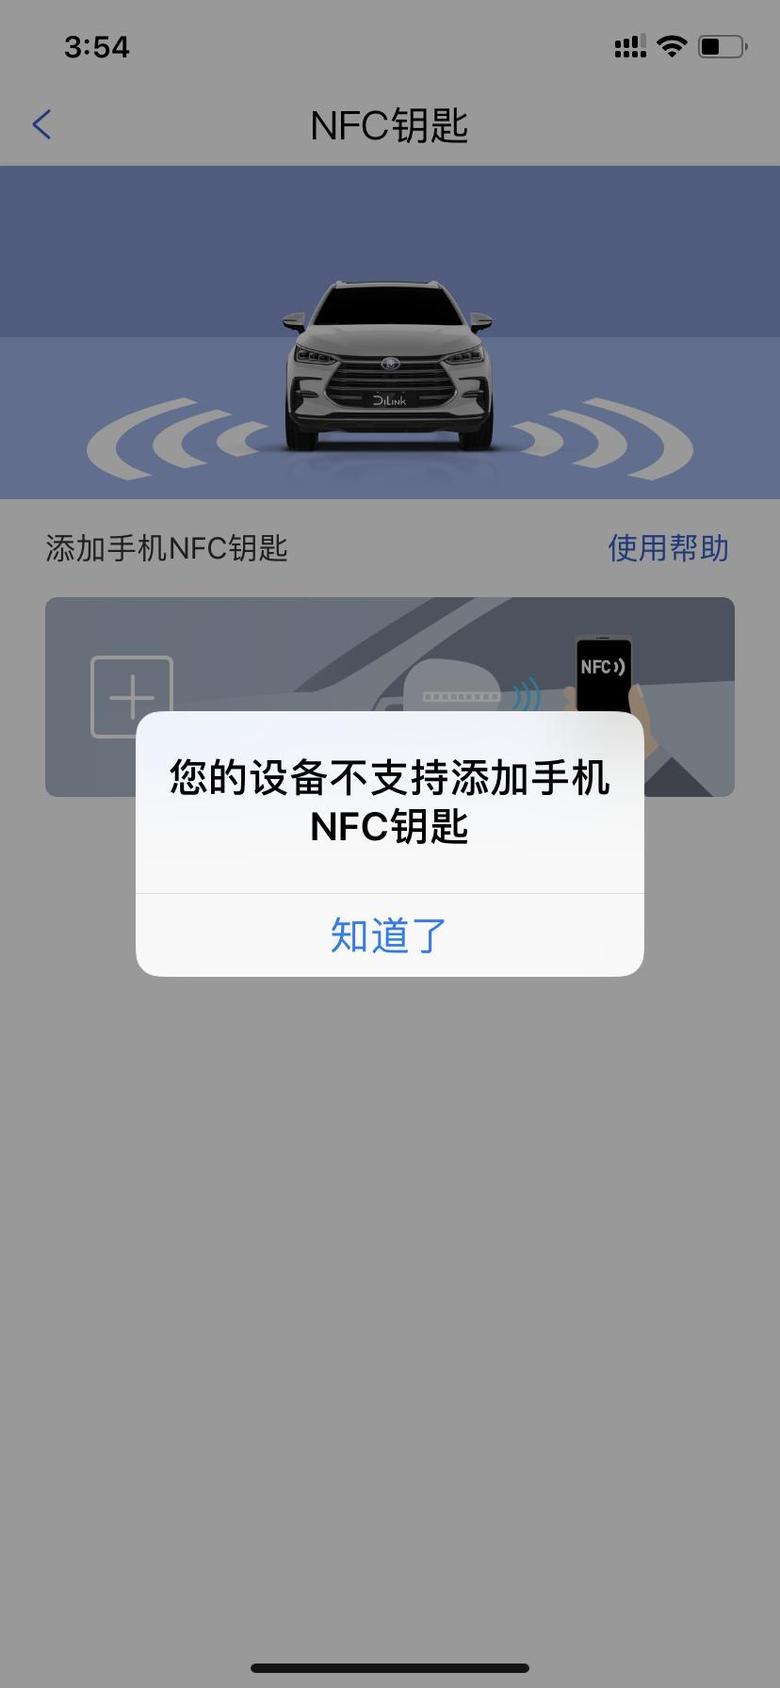 唐dm 苹果手机什么时候能支持NFC功能啊